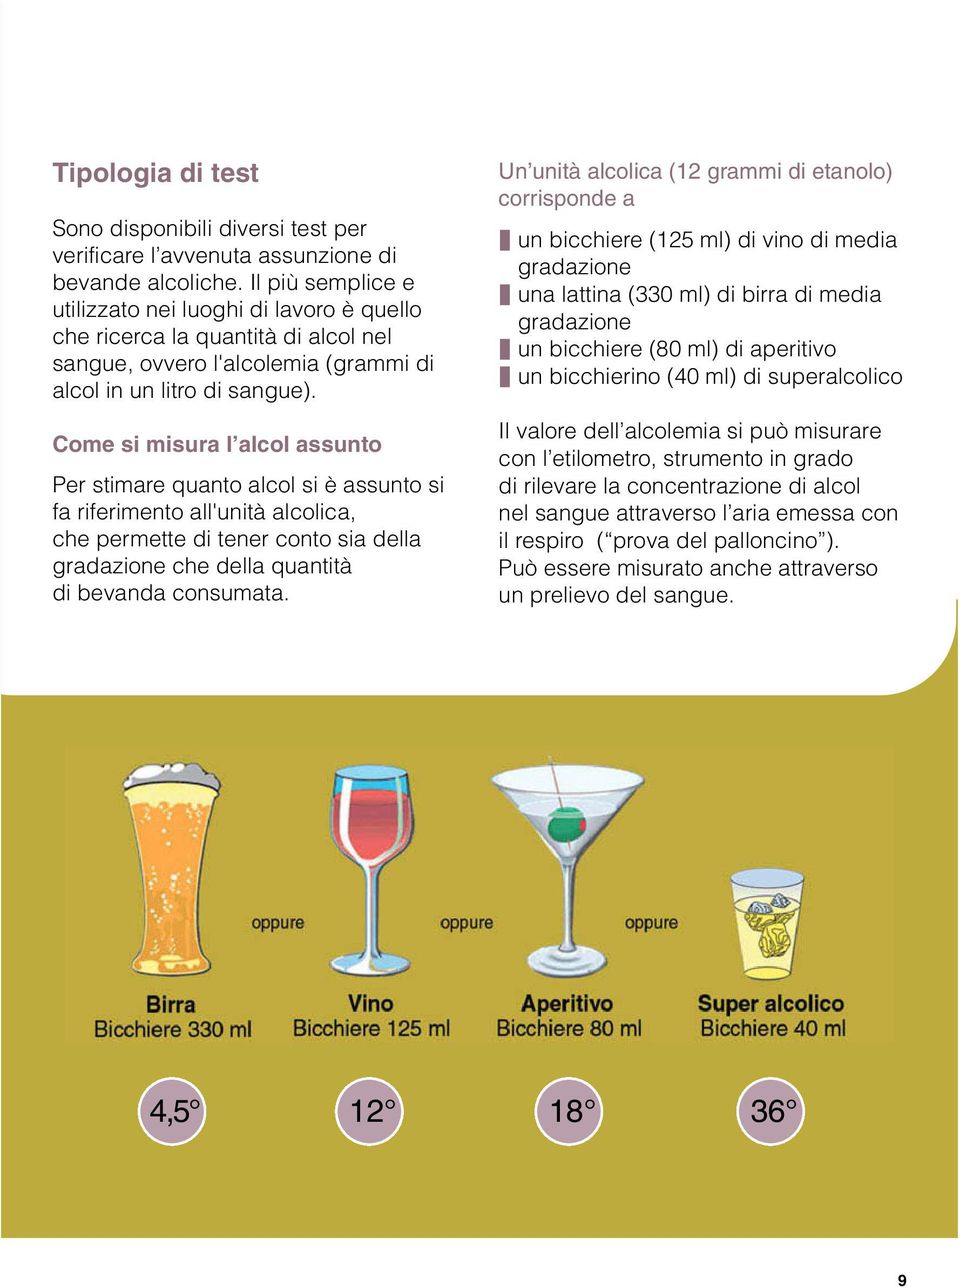 Come si misura l alcol assunto Per stimare quanto alcol si è assunto si fa riferimento all'unità alcolica, che permette di tener conto sia della gradazione che della quantità di bevanda consumata.